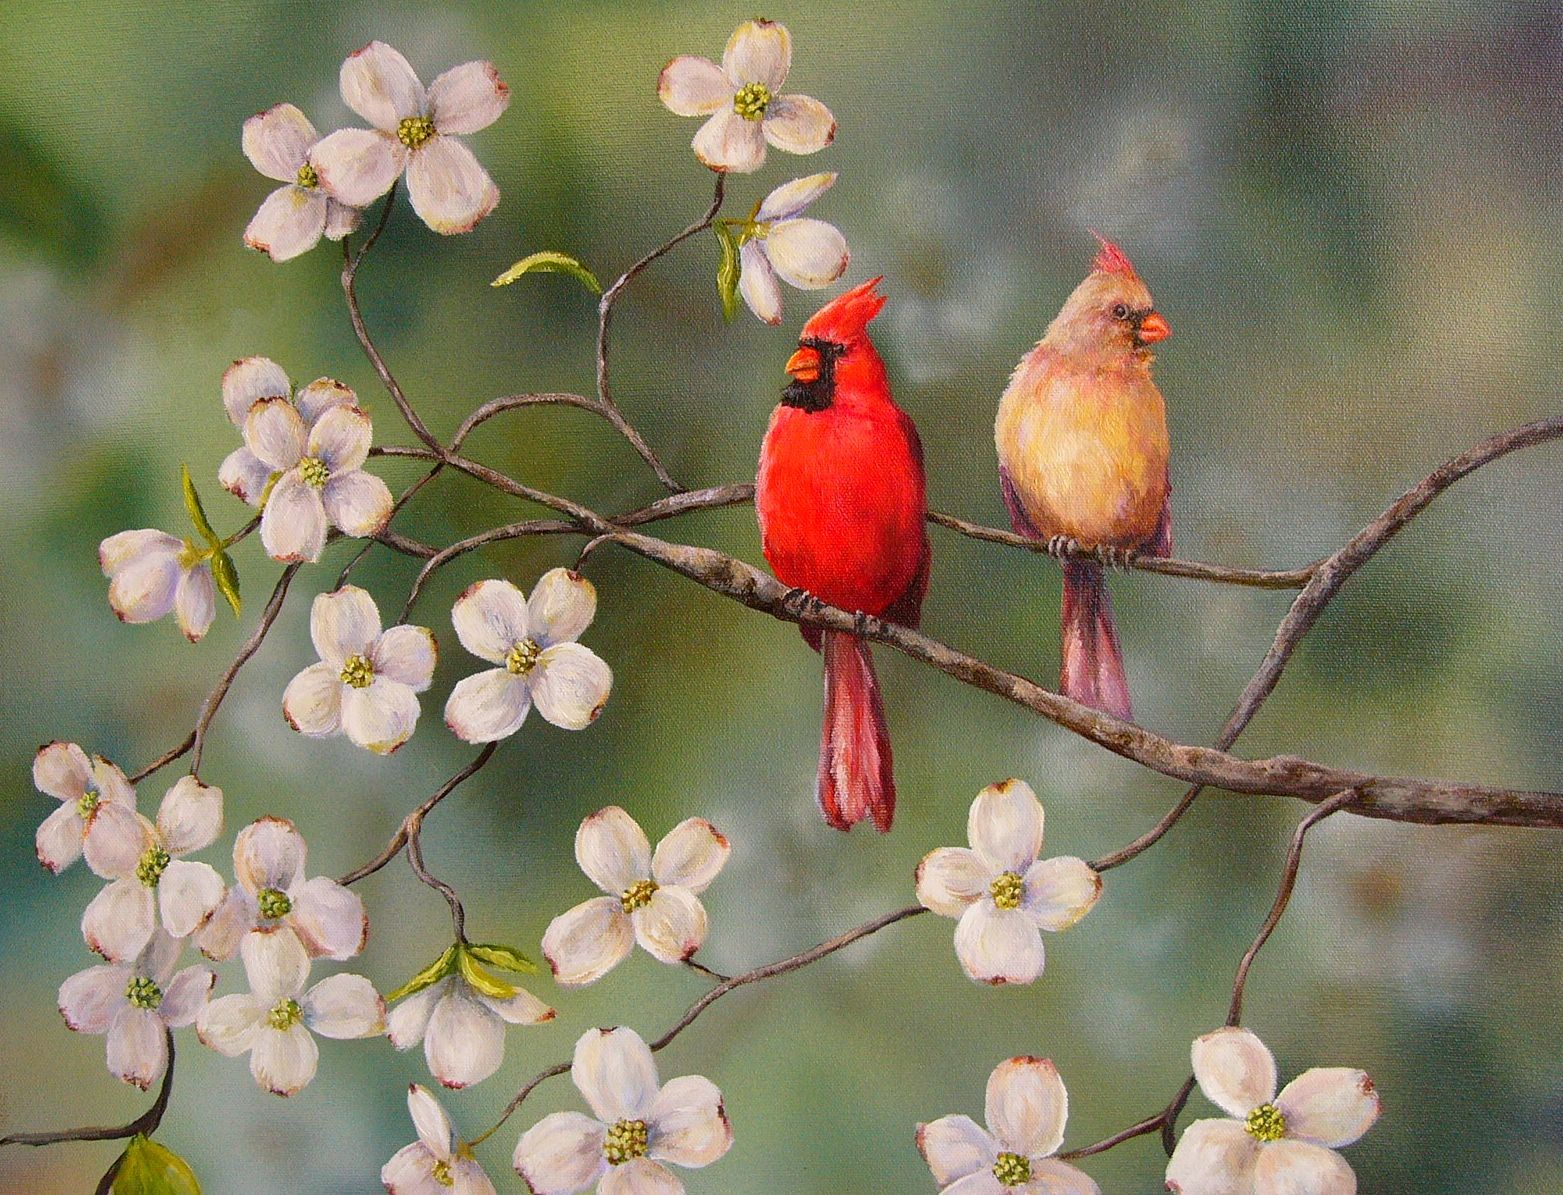 Wild life: Cardinal | wild birds